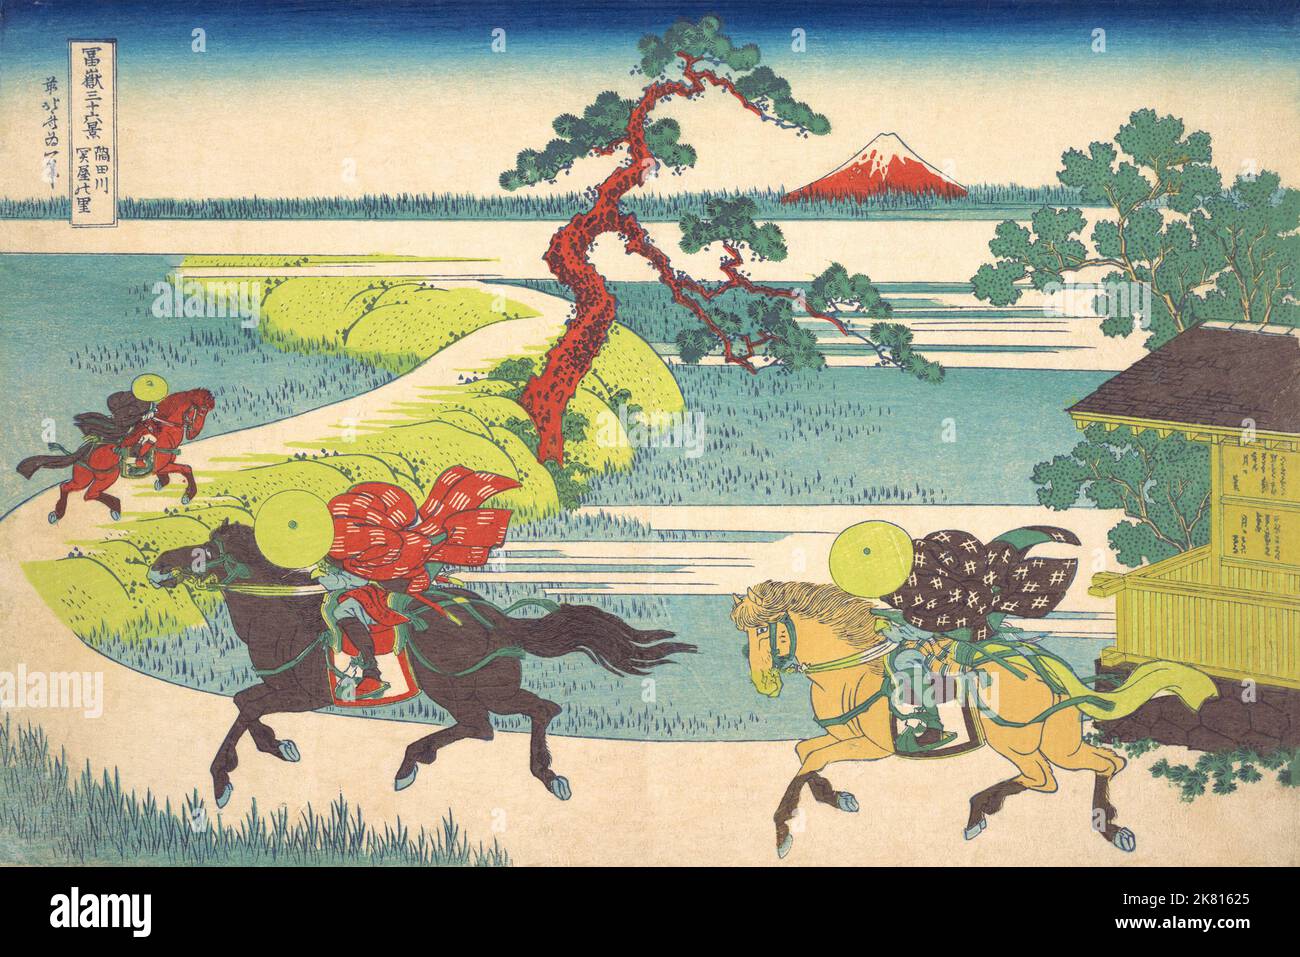 Giappone: “Villaggio di Sekiya sul fiume Sumida”. Ukiyo-e stampa in blocco della serie «trentasei viste del Monte Fuji» di Katsushika Hokusai (31 ottobre 1760 - 10 maggio 1849), 1830. “trentasei viste del Monte Fuji” è una serie di stampe in legno realizzate dall’artista giapponese Katsushika Hokusai. La serie raffigura il Monte Fuji in stagioni e condizioni meteorologiche diverse da una varietà di luoghi e distanze. Si compone di 46 stampe create tra il 1826 e il 1833. I primi 36 furono inclusi nella pubblicazione originale e, a causa della loro popolarità, ne furono aggiunti altri 10. Foto Stock